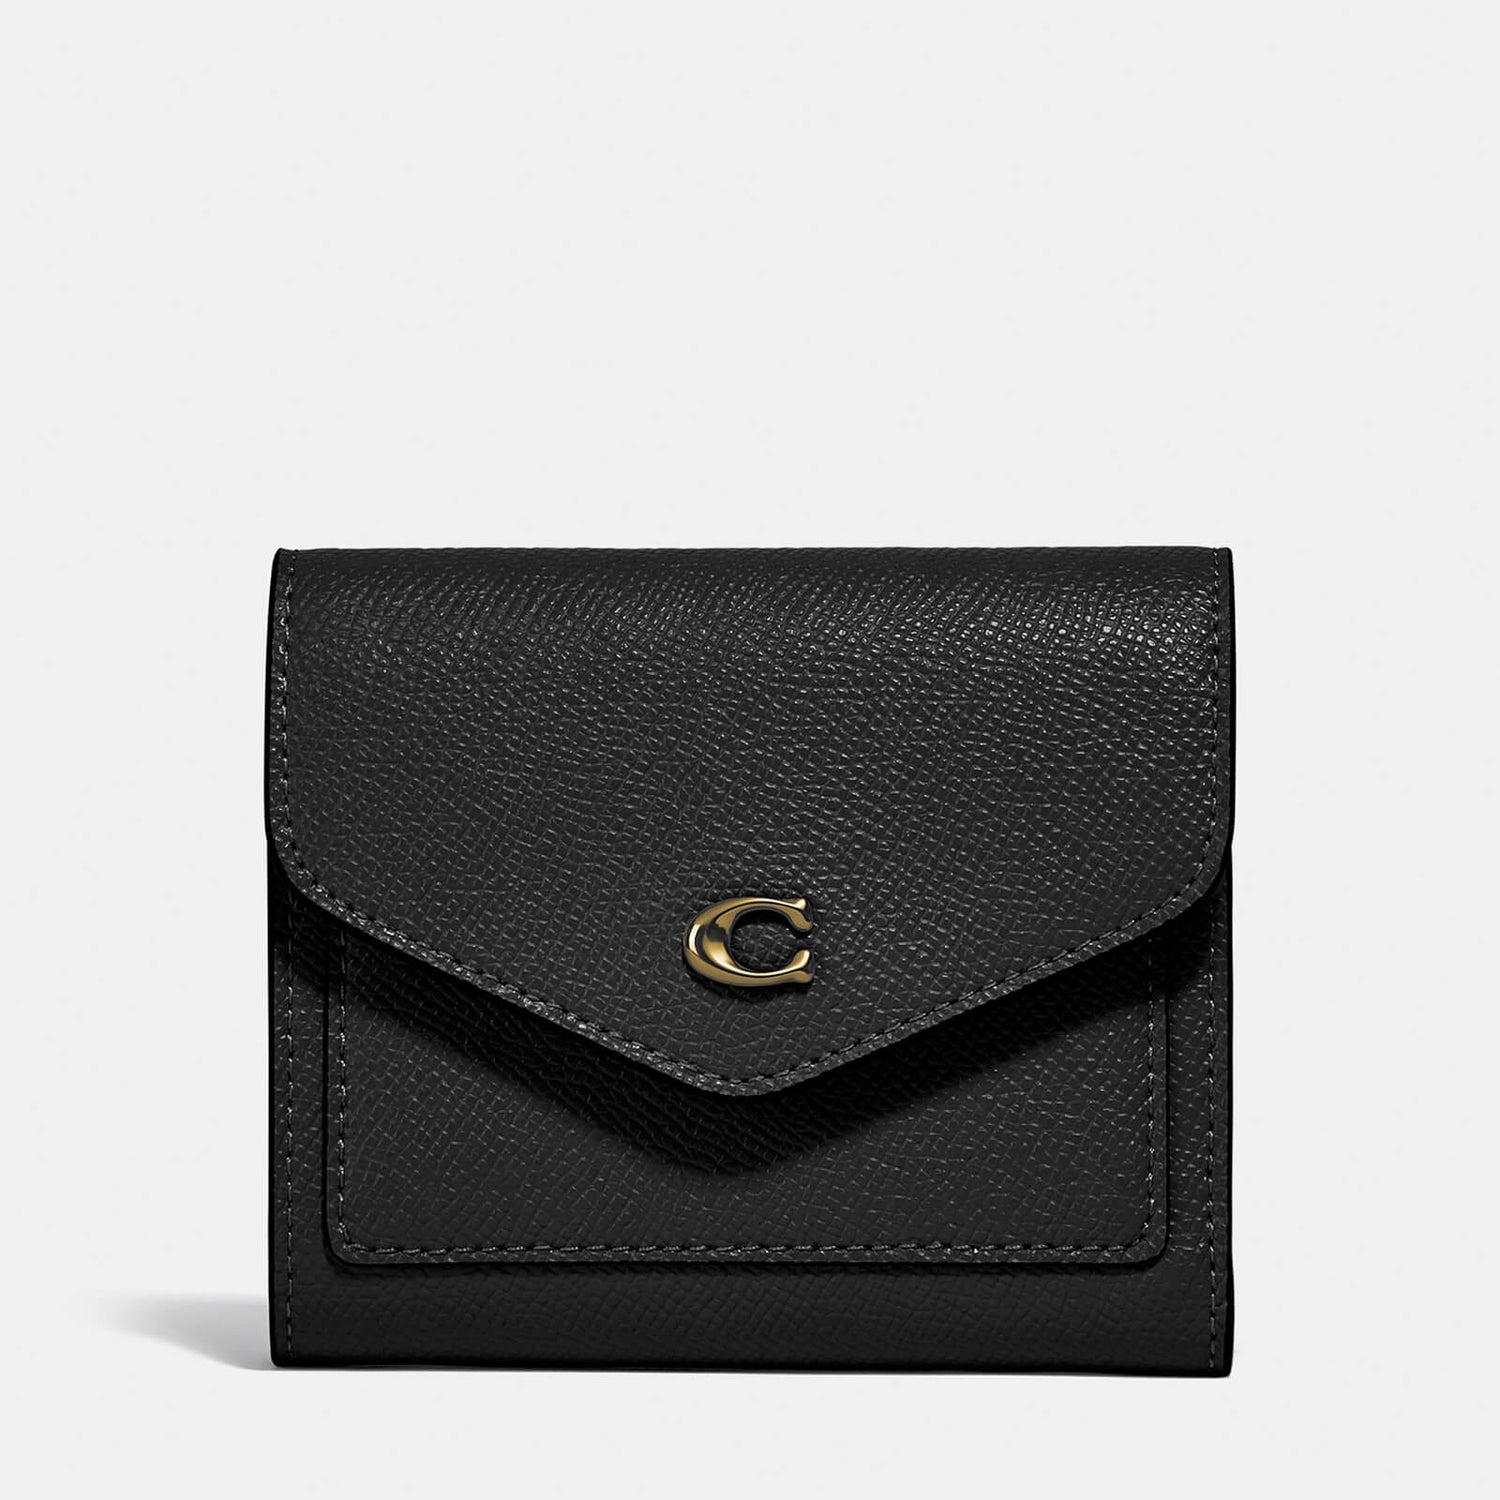 Coach Women's Crossgrain Leather Small Wallet - Li/Black